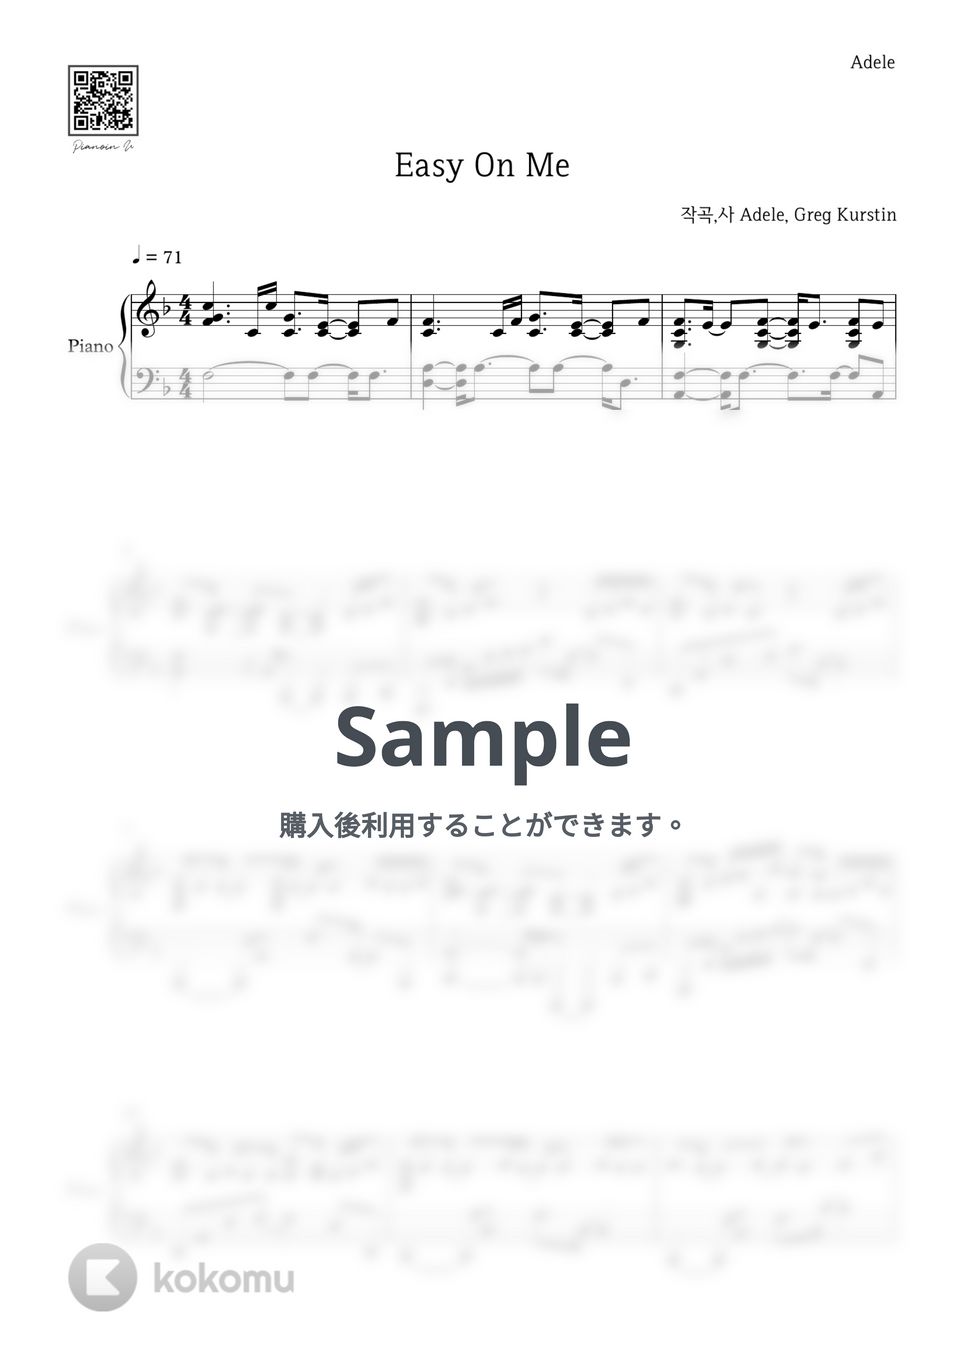 アデル - Easy On Me by PIANOiNU